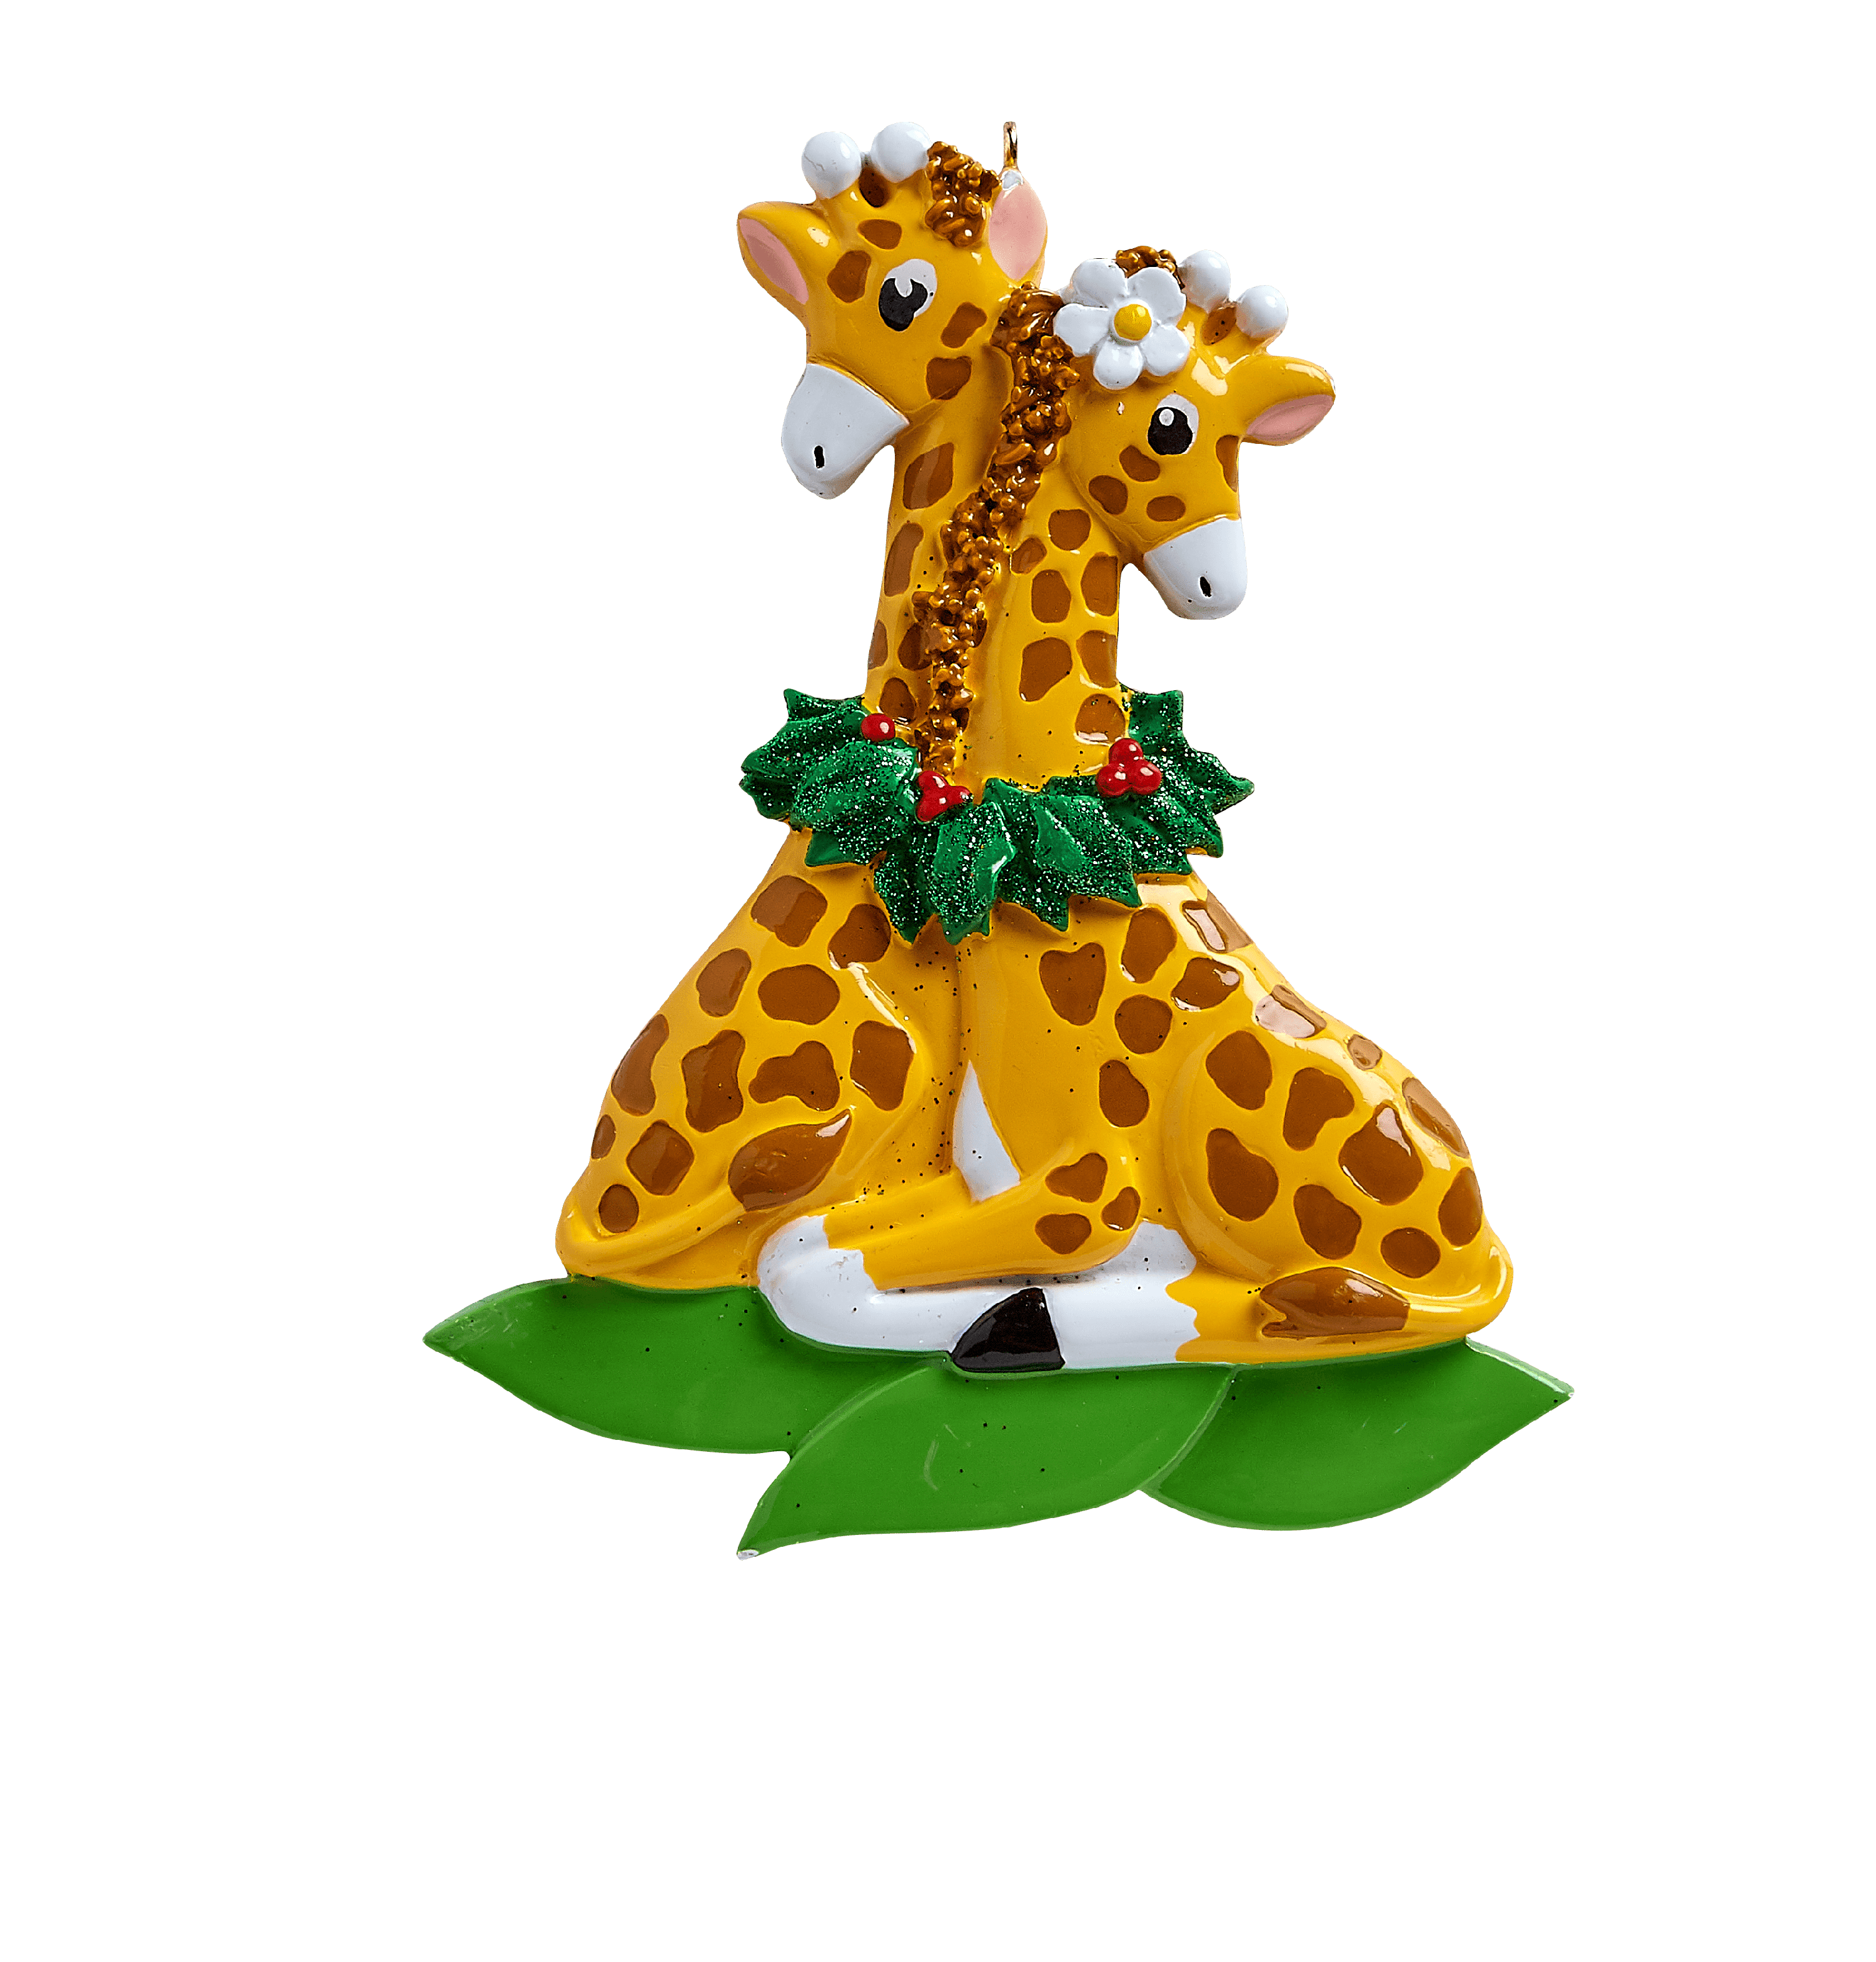 Giraffe Couple Personalized Christmas Ornament  Walmart.com  Walmart.com